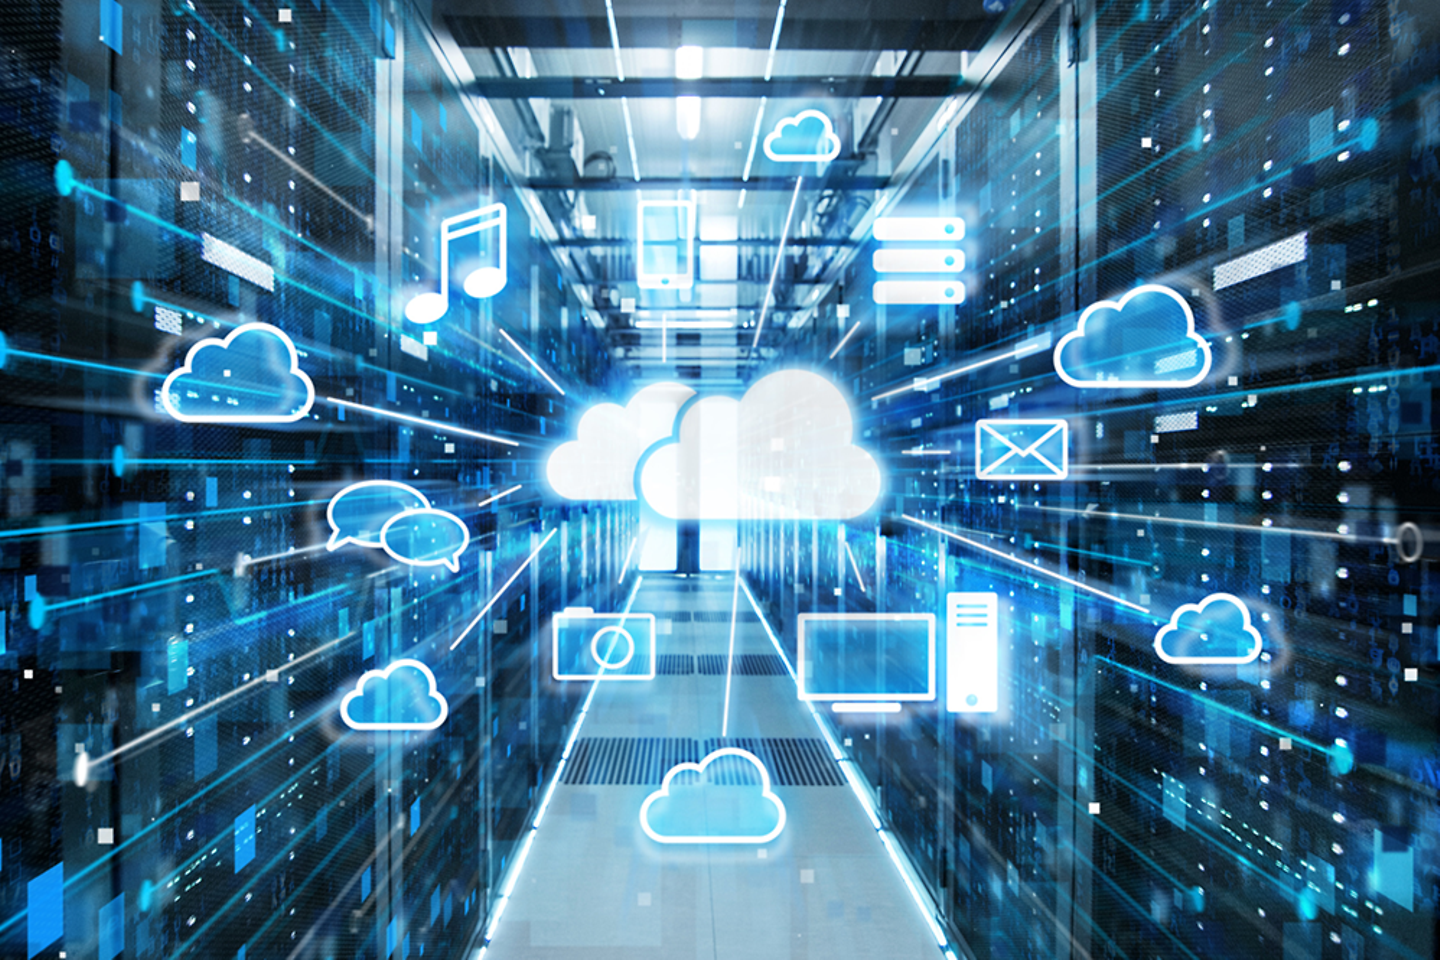 Eine Cloud in virtueller Darstellung umgeben von mehreren technischen Zeichen